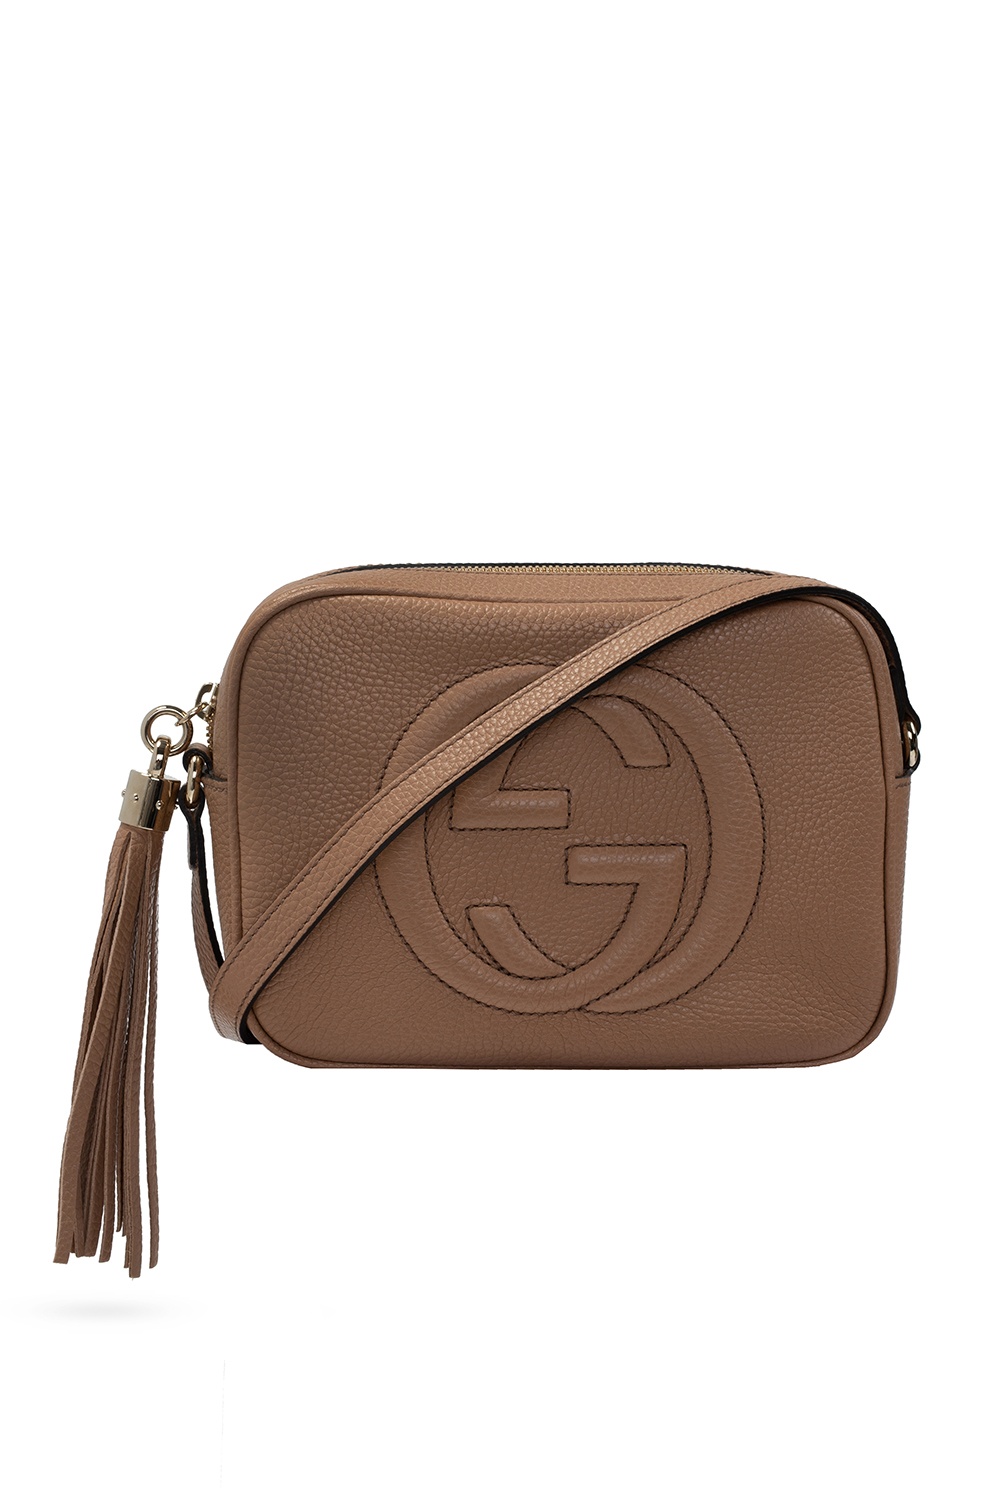 Gucci 'Soho Disco' shoulder bag, Women's Bags